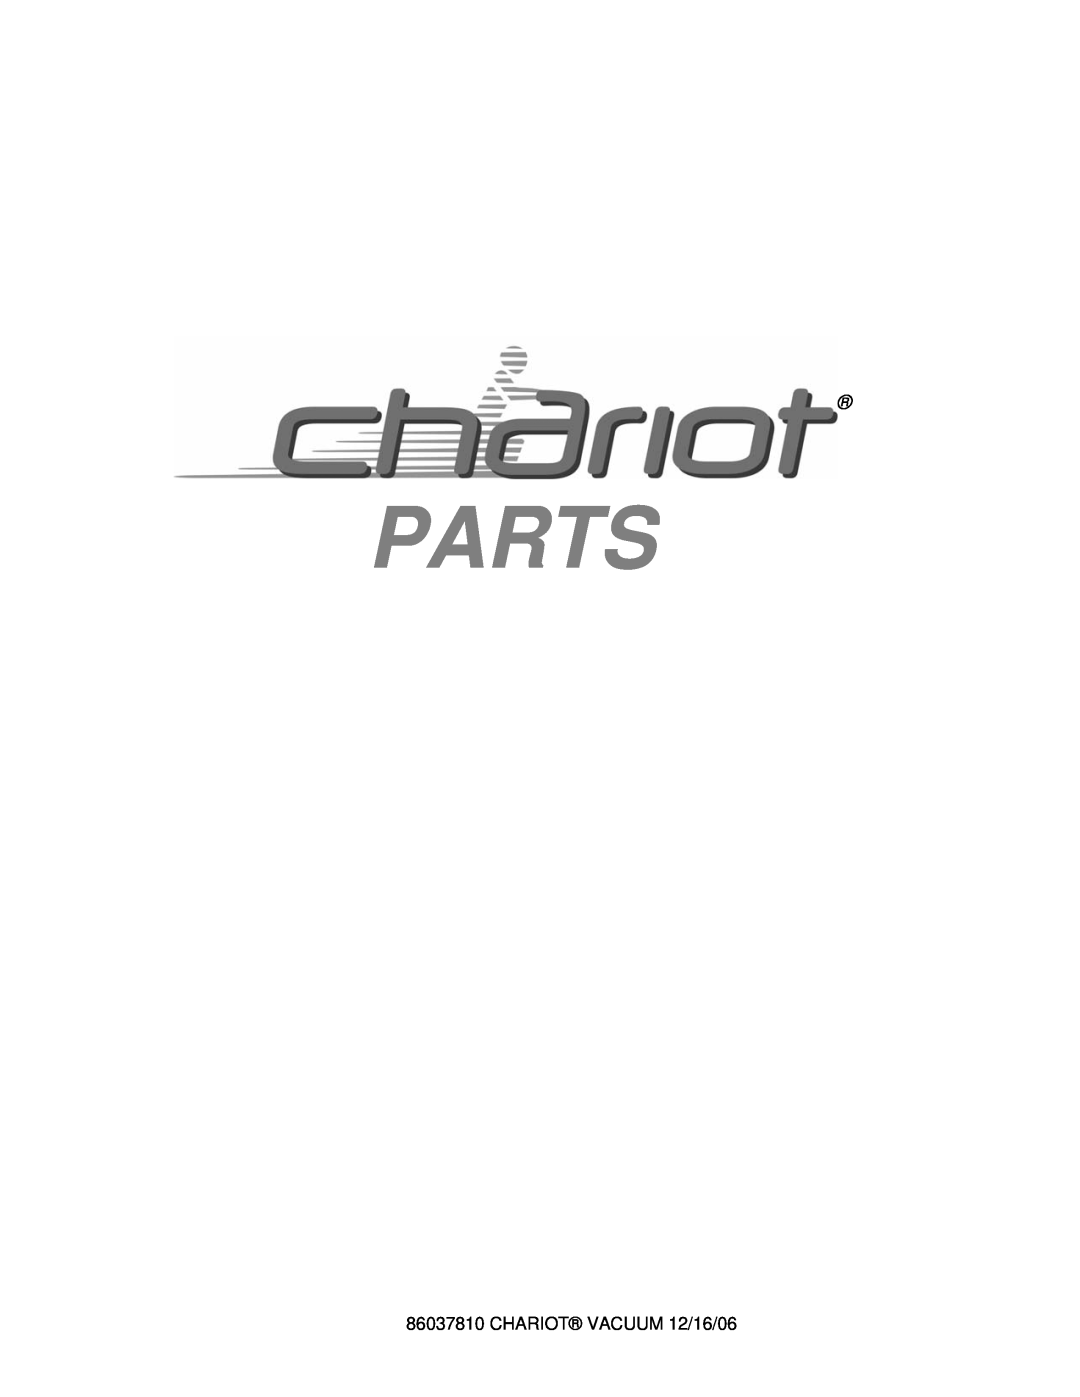 Windsor CVX28, CVXCD28, CVXE28, CVE28, CV28 manual Parts, CHARIOT VACUUM 12/16/06 